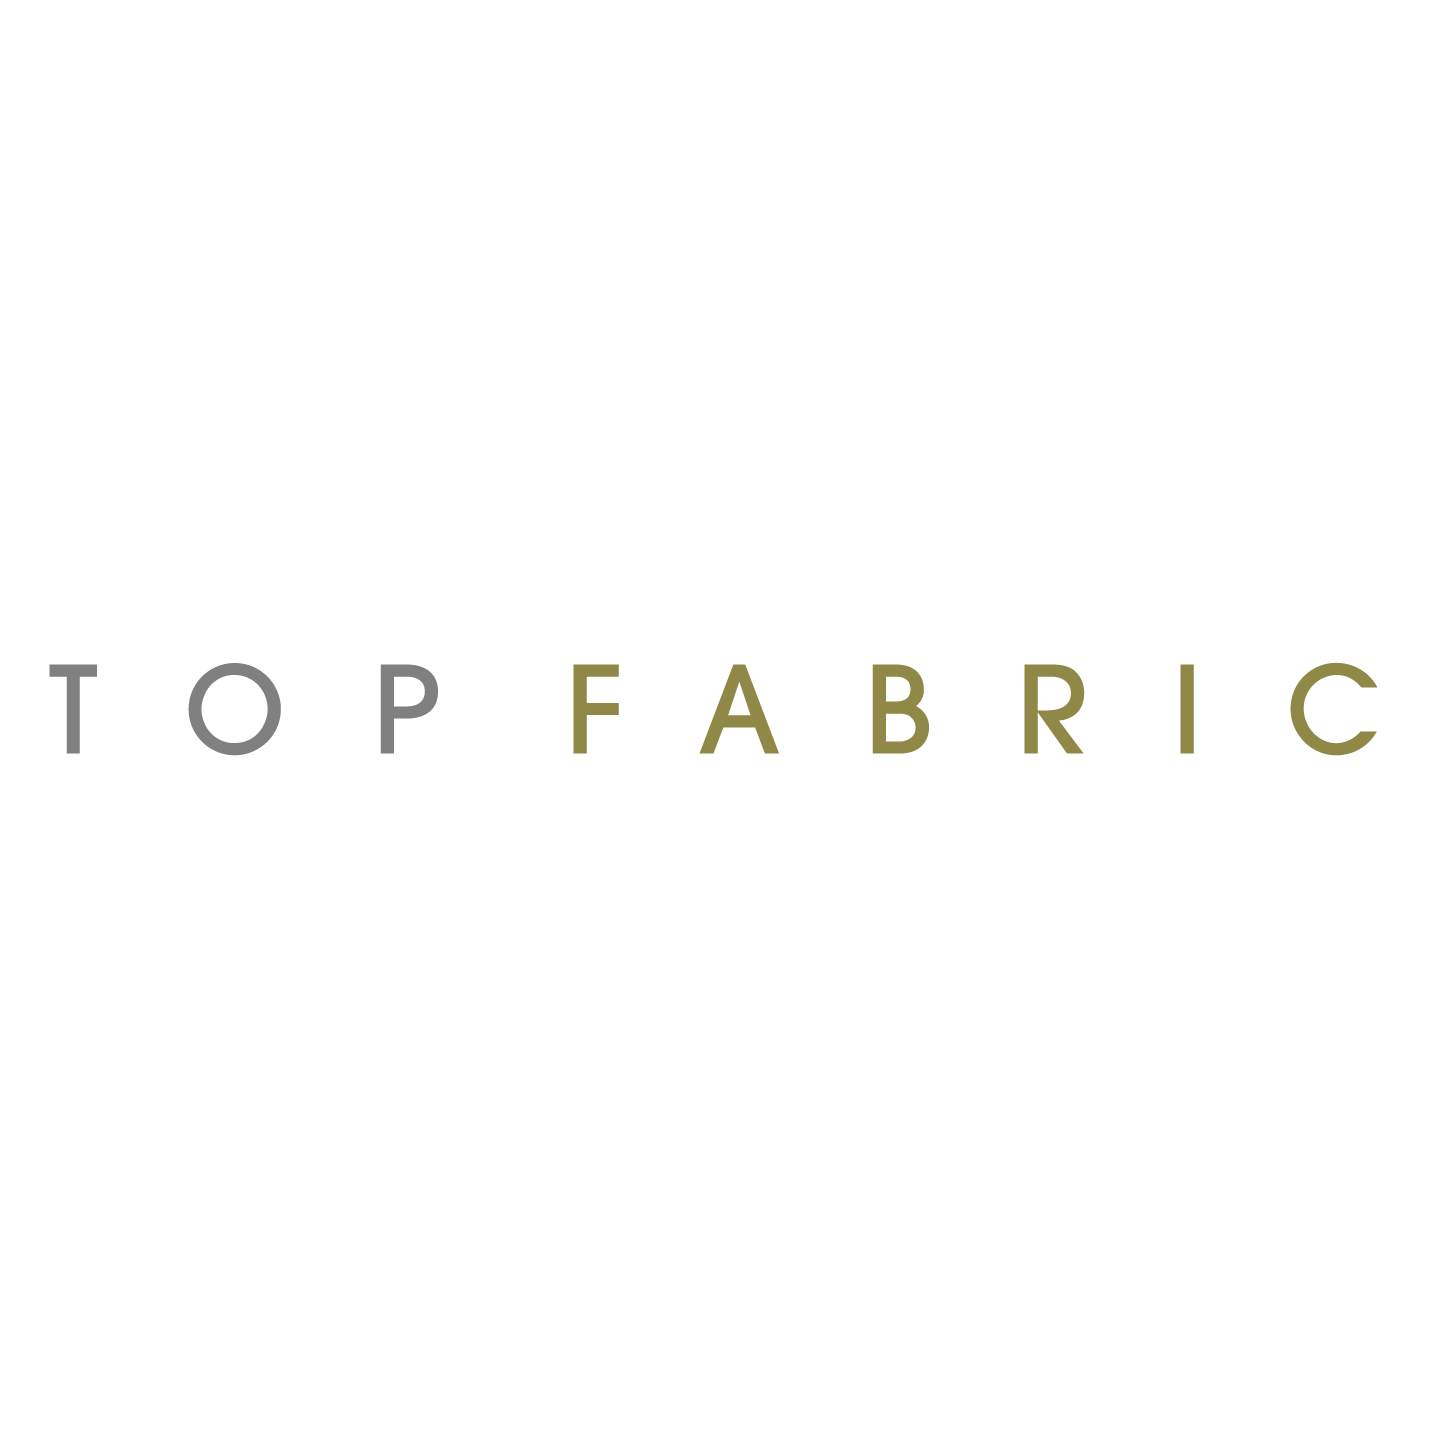 Buy fabric online - Glitter Fabrics - Embellished Fabrics